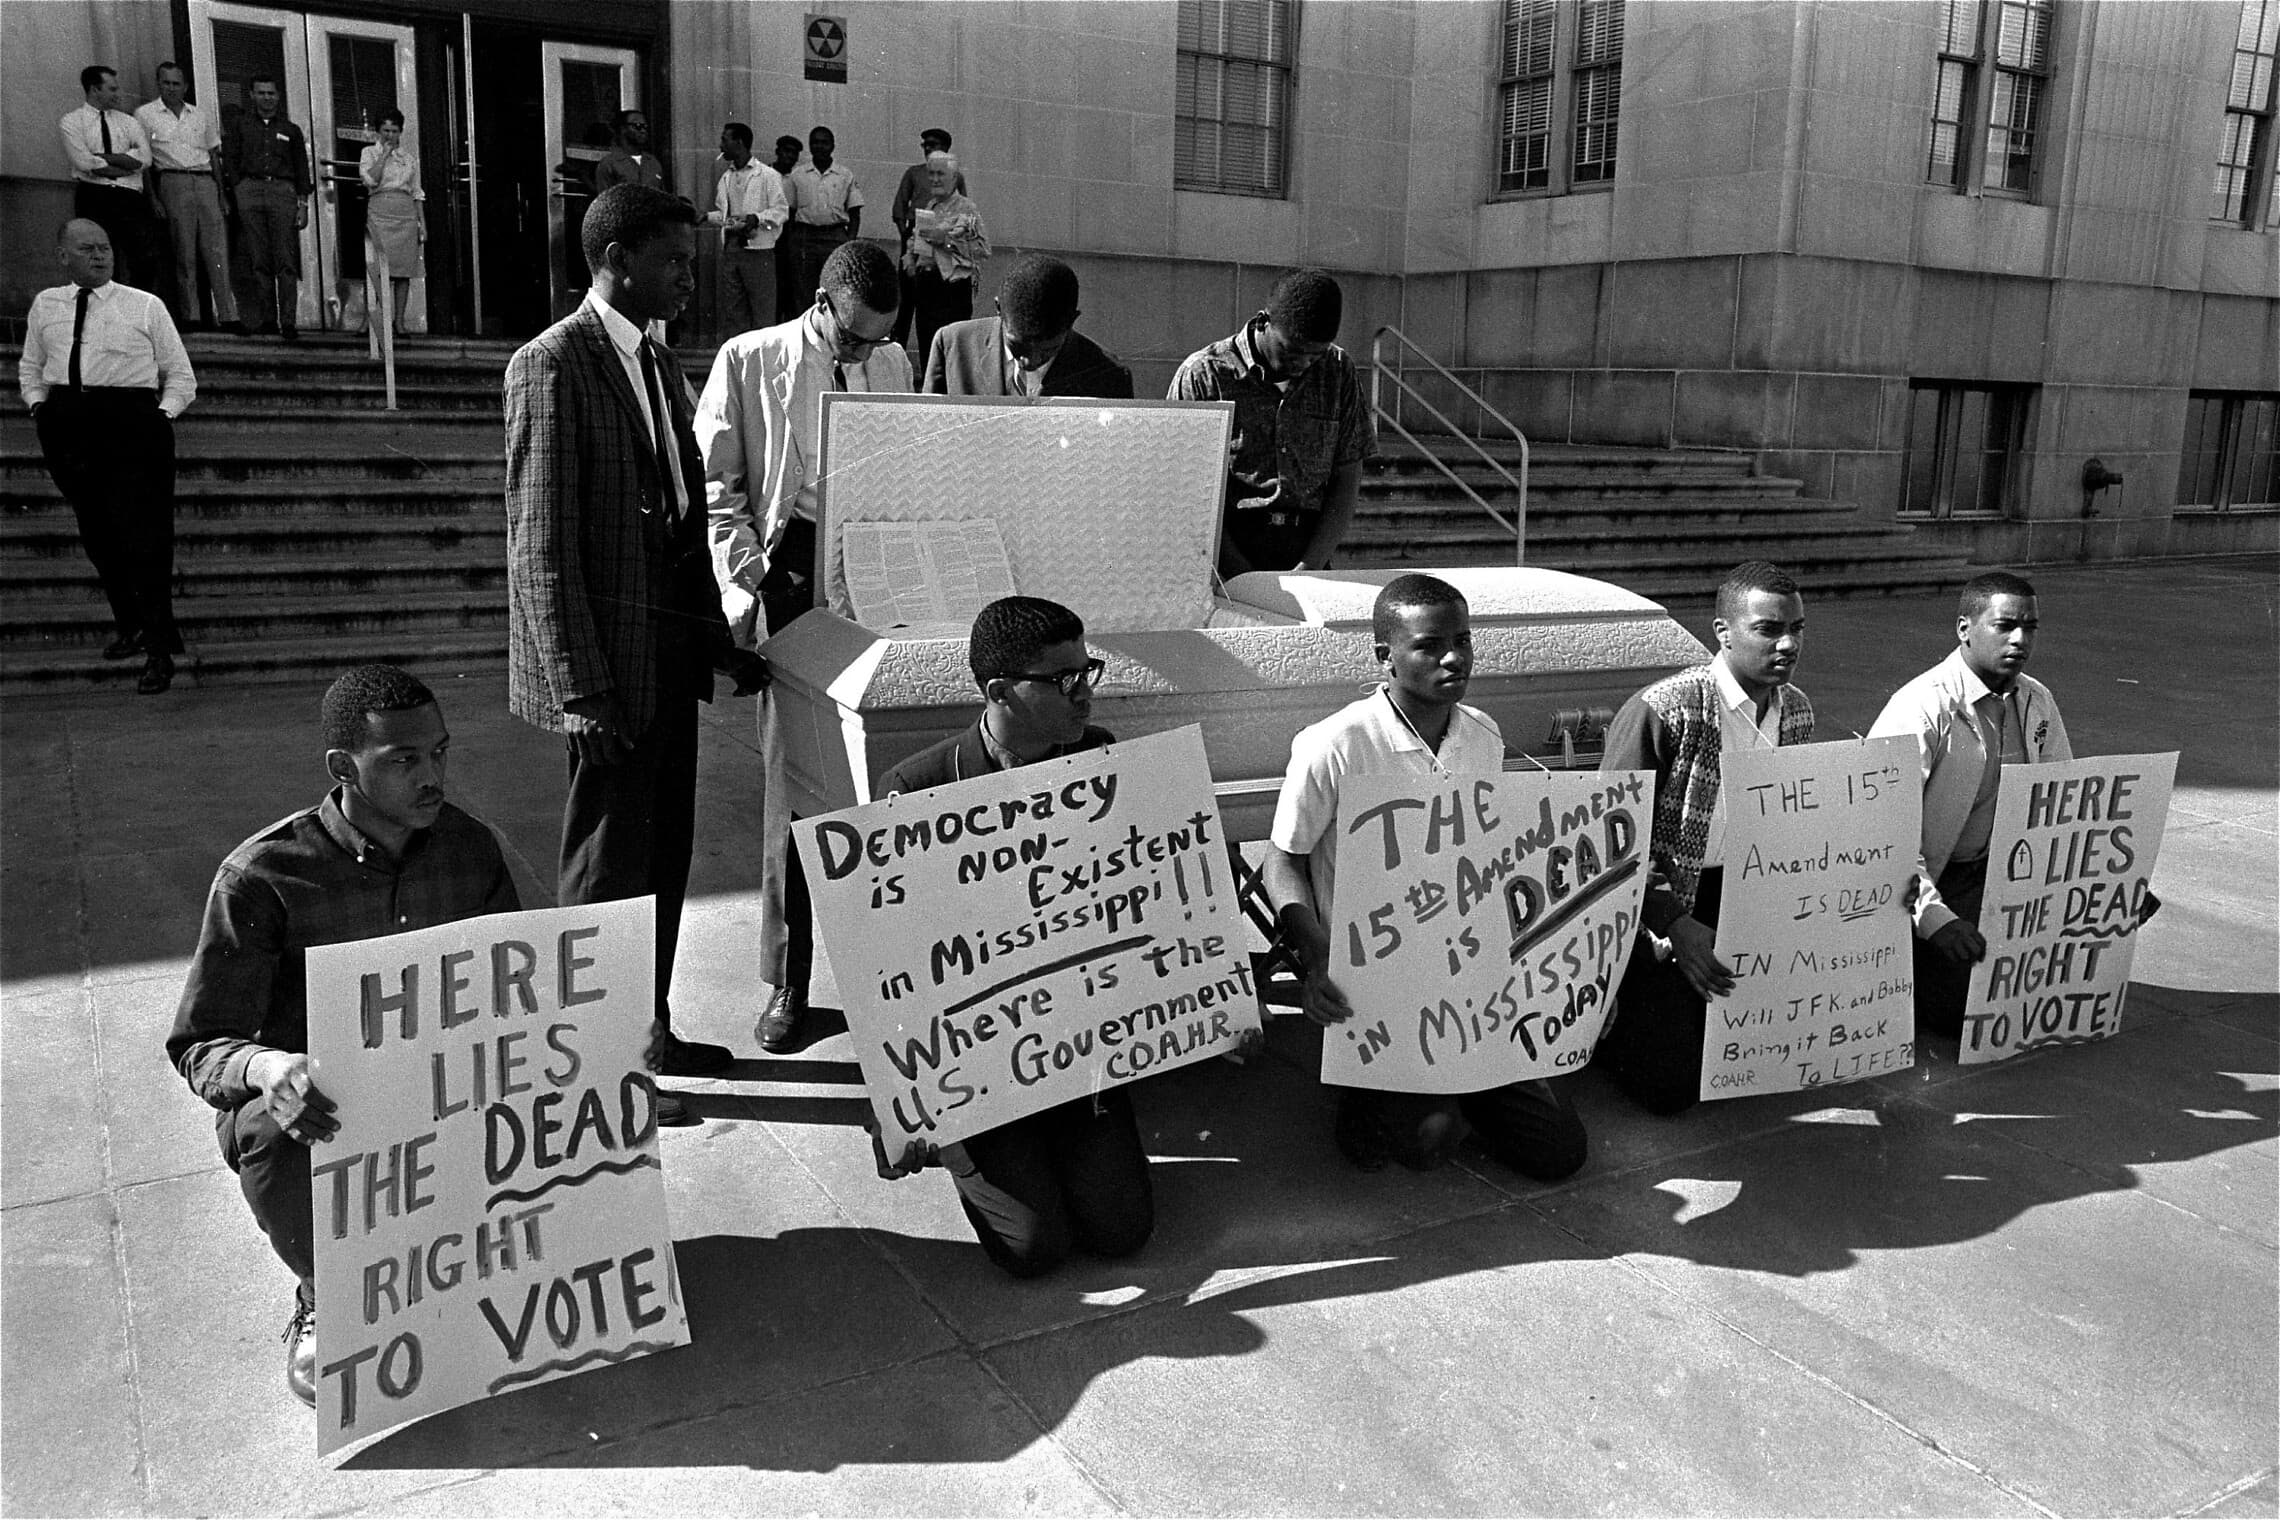 מפגינים מציגים את התיקון ה-15 לחוקה האמריקאית בארון קבועה על מדרגות בית המחוקקים באטלנטה, ג&#8217;ורג&#8217;יה, ב-30 במרץ 1963 (צילום: AP Photo)